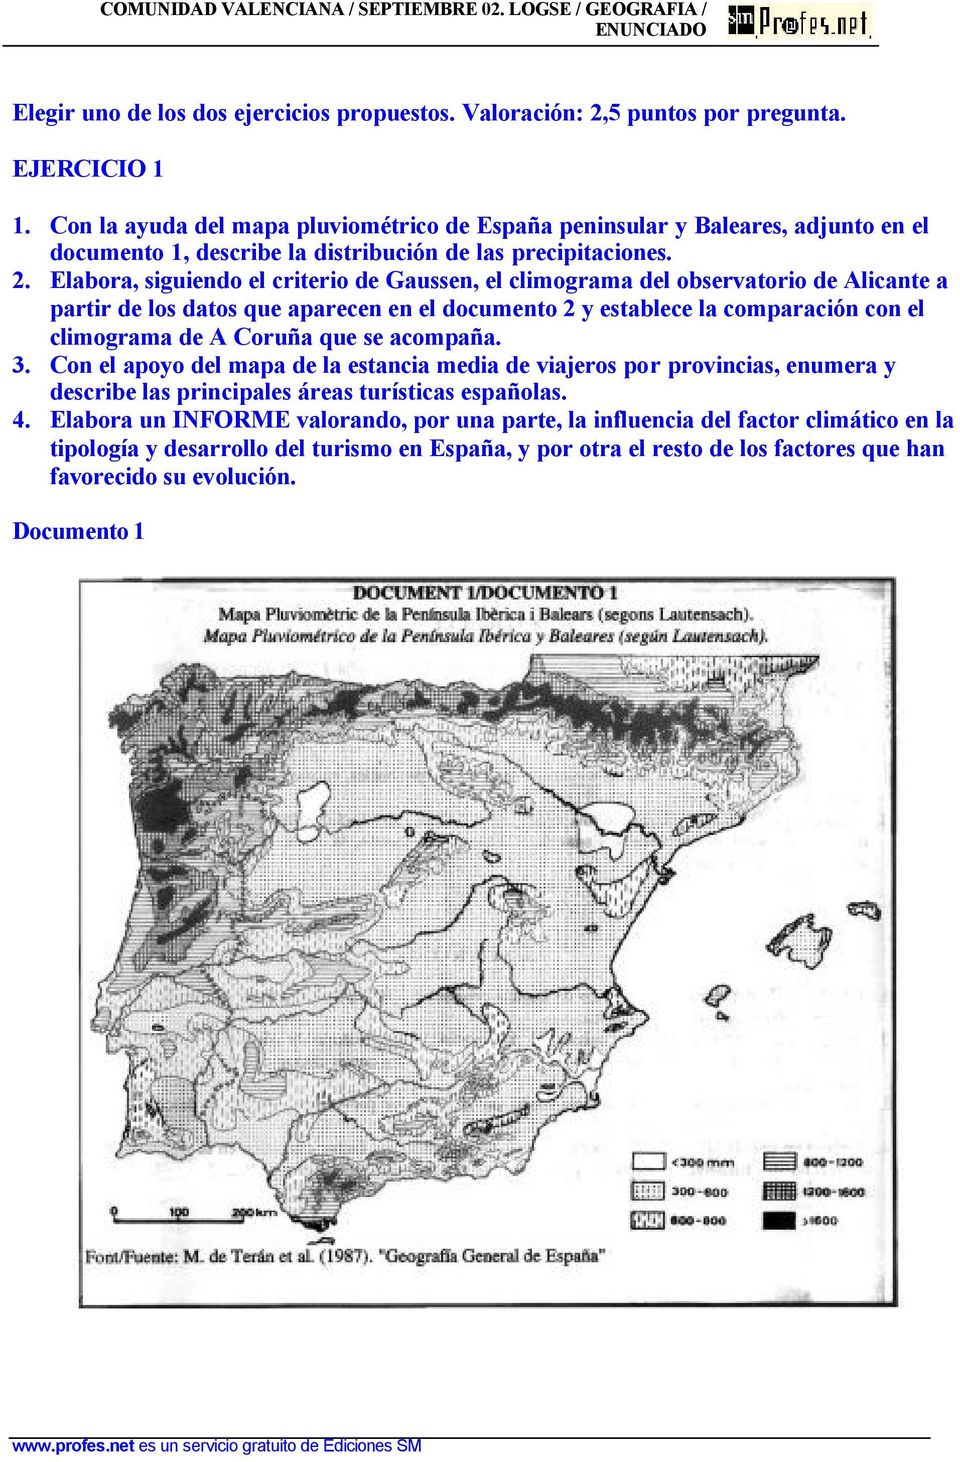 Elabora, siguiendo el criterio de Gaussen, el climograma del observatorio de Alicante a partir de los datos que aparecen en el documento 2 y establece la comparación con el climograma de A Coruña que